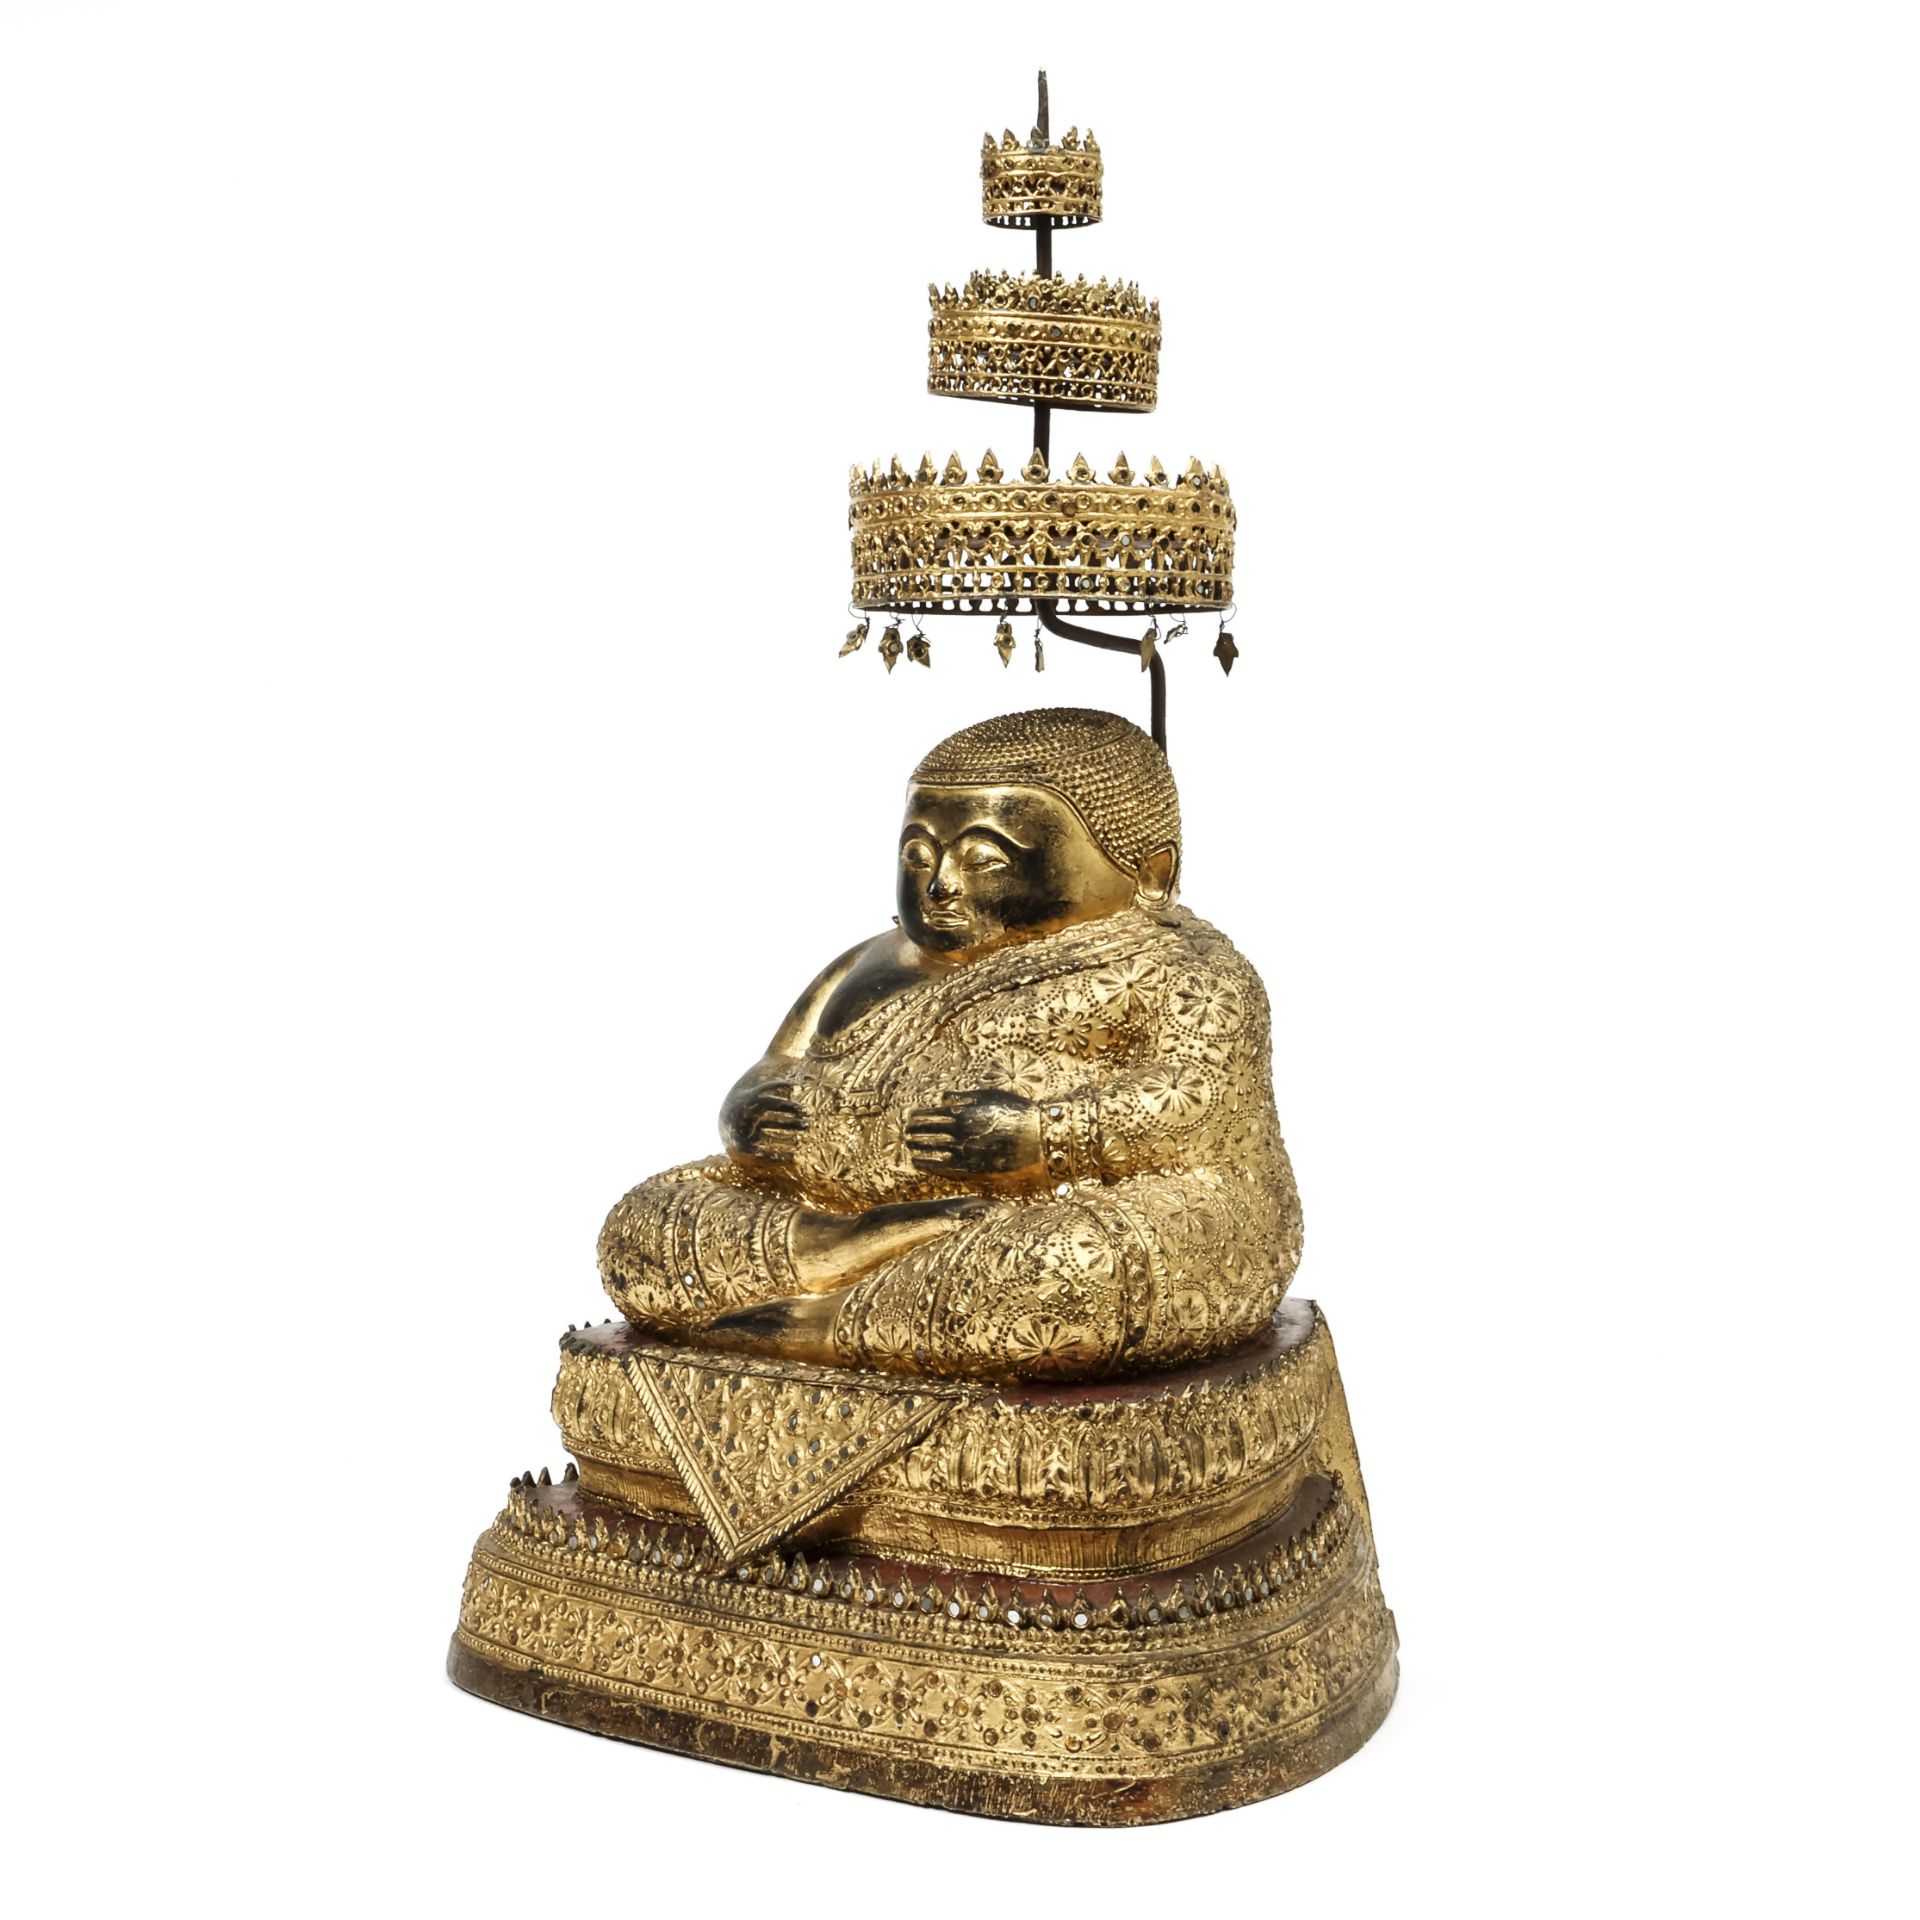 Thailand, a Ratnakosin bronze figure of Sankachai - Mahakatyayana Buddha, 19th century - Image 4 of 4